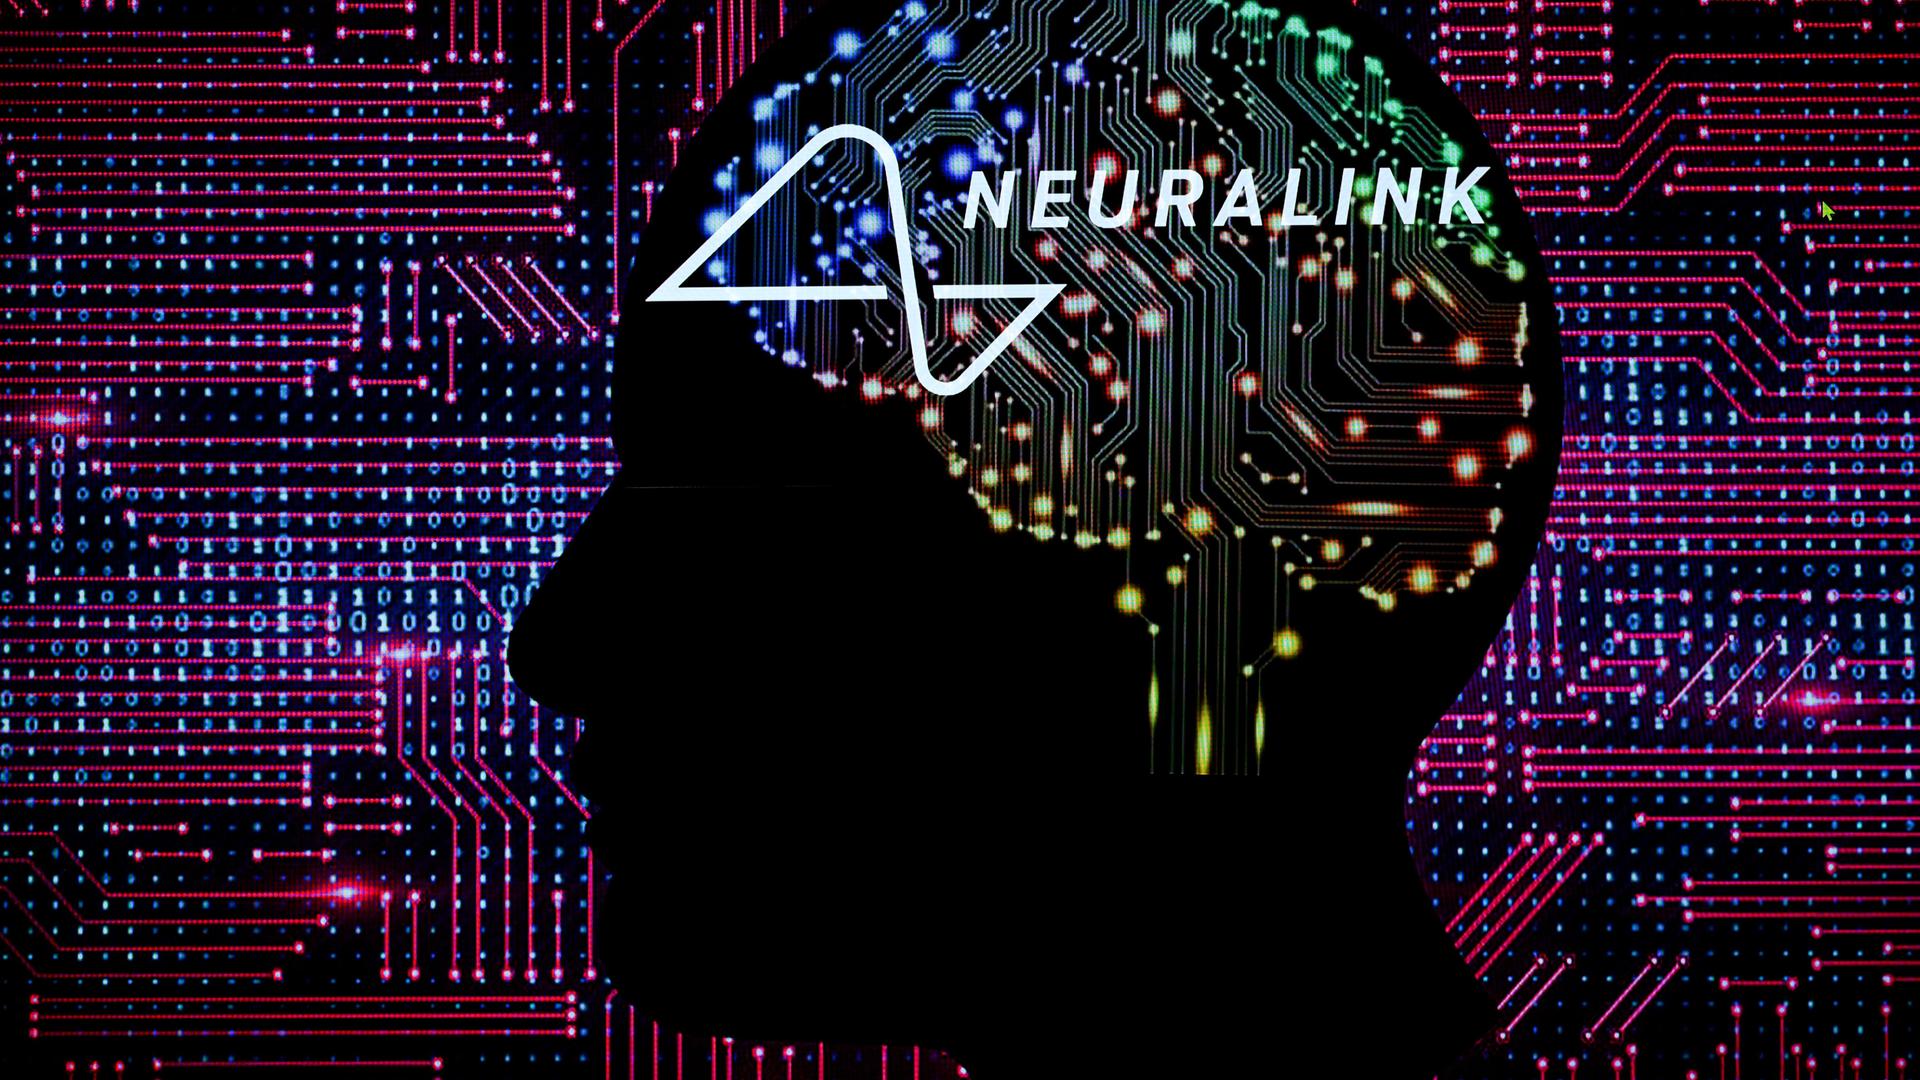 Die Grafik zeigt einen stilisierten Kopf mit einem Gehirn aus Schaltkreisen vor digitalen Zahlenkolonnen.